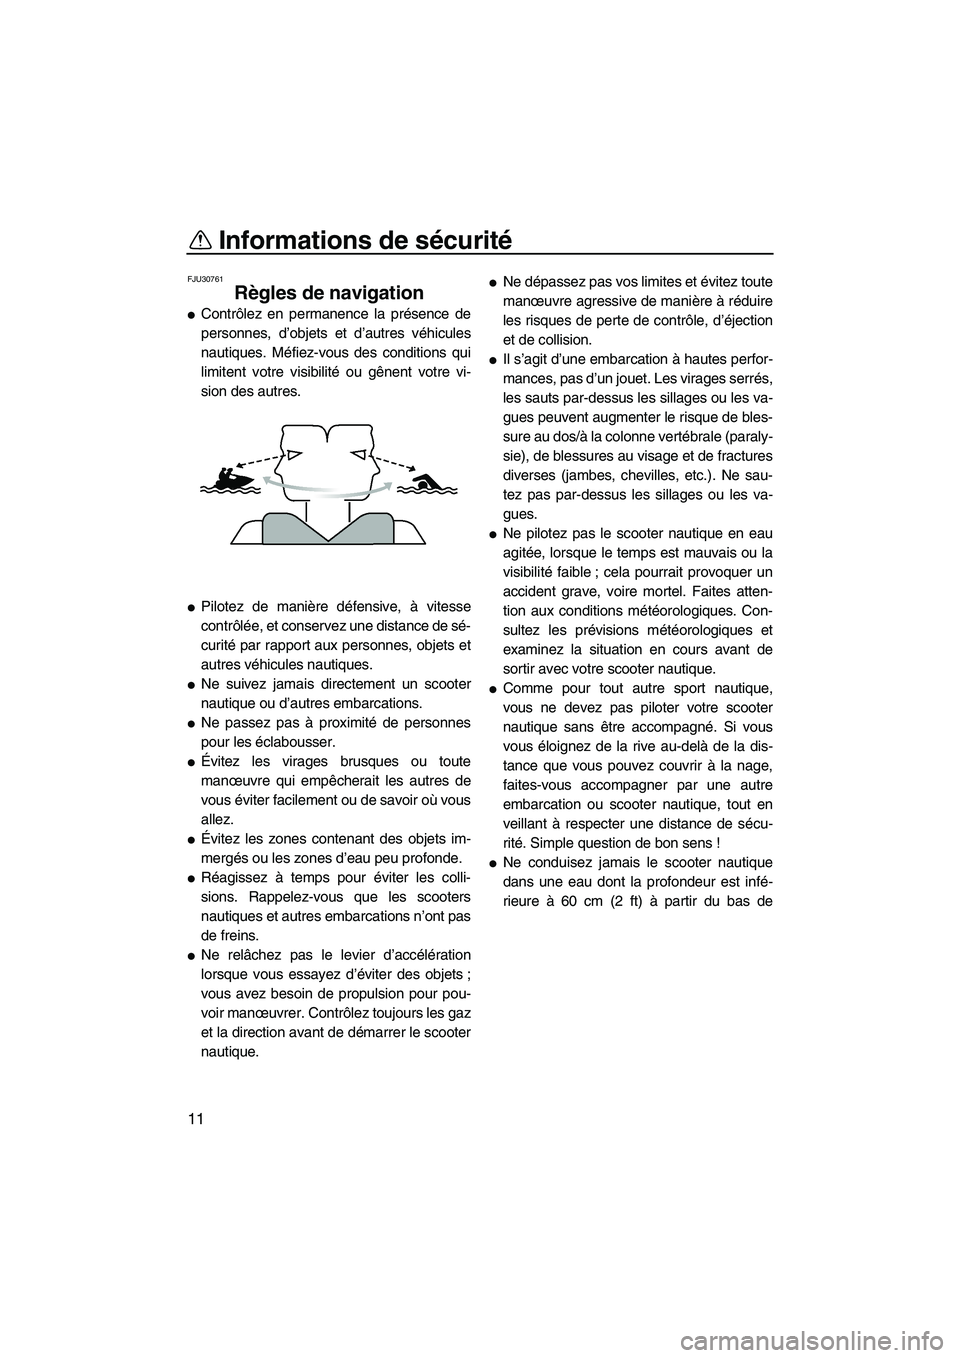 YAMAHA SVHO 2009  Notices Demploi (in French) Informations de sécurité
11
FJU30761
Règles de navigation 
Contrôlez en permanence la présence de
personnes, d’objets et d’autres véhicules
nautiques. Méfiez-vous des conditions qui
limite